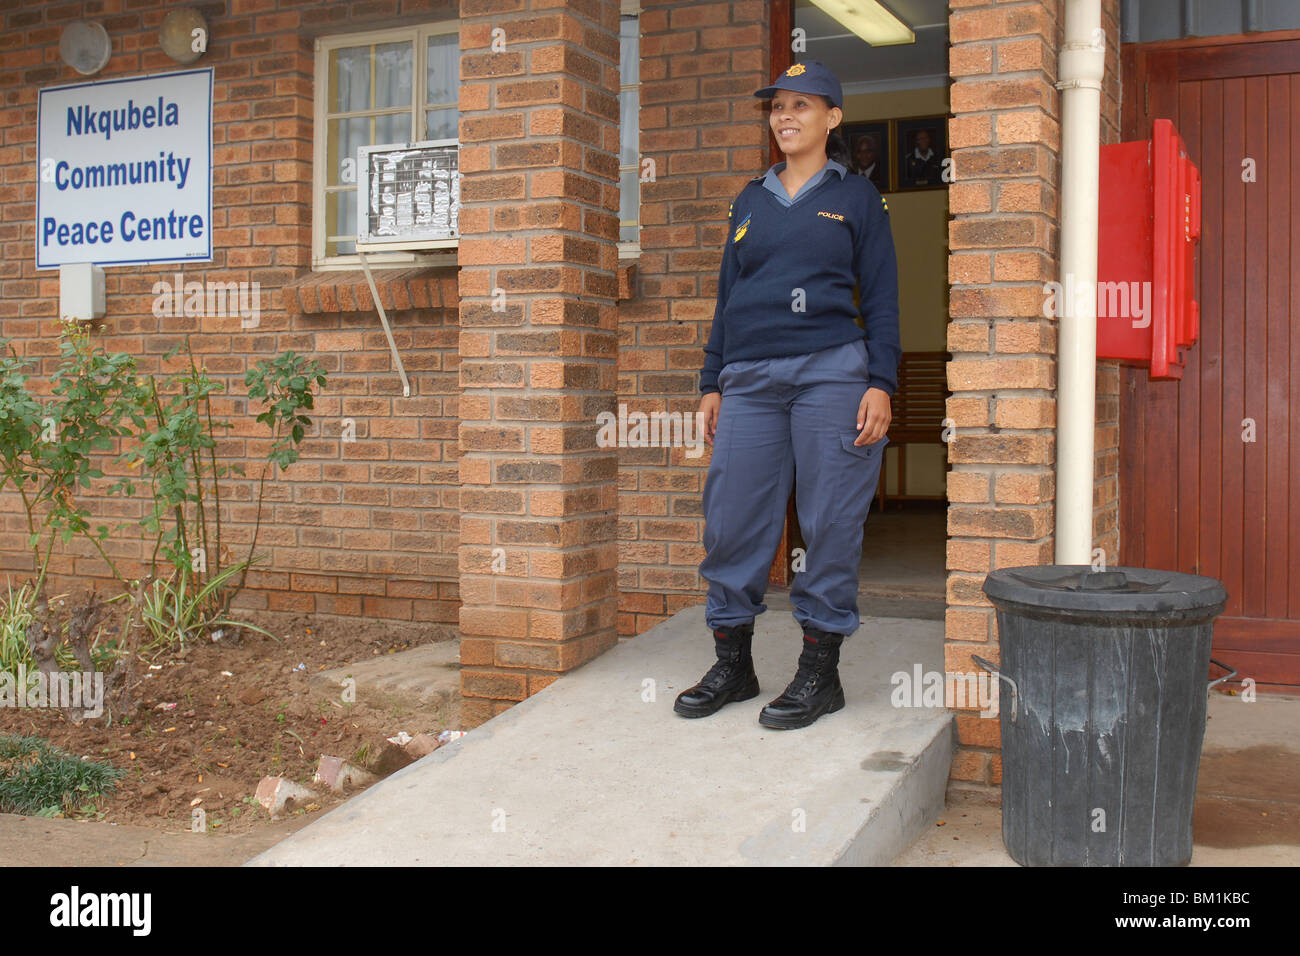 Polizistin der Gemeinde Nquebele in der Nähe von Robertson, Südafrika Stockfoto